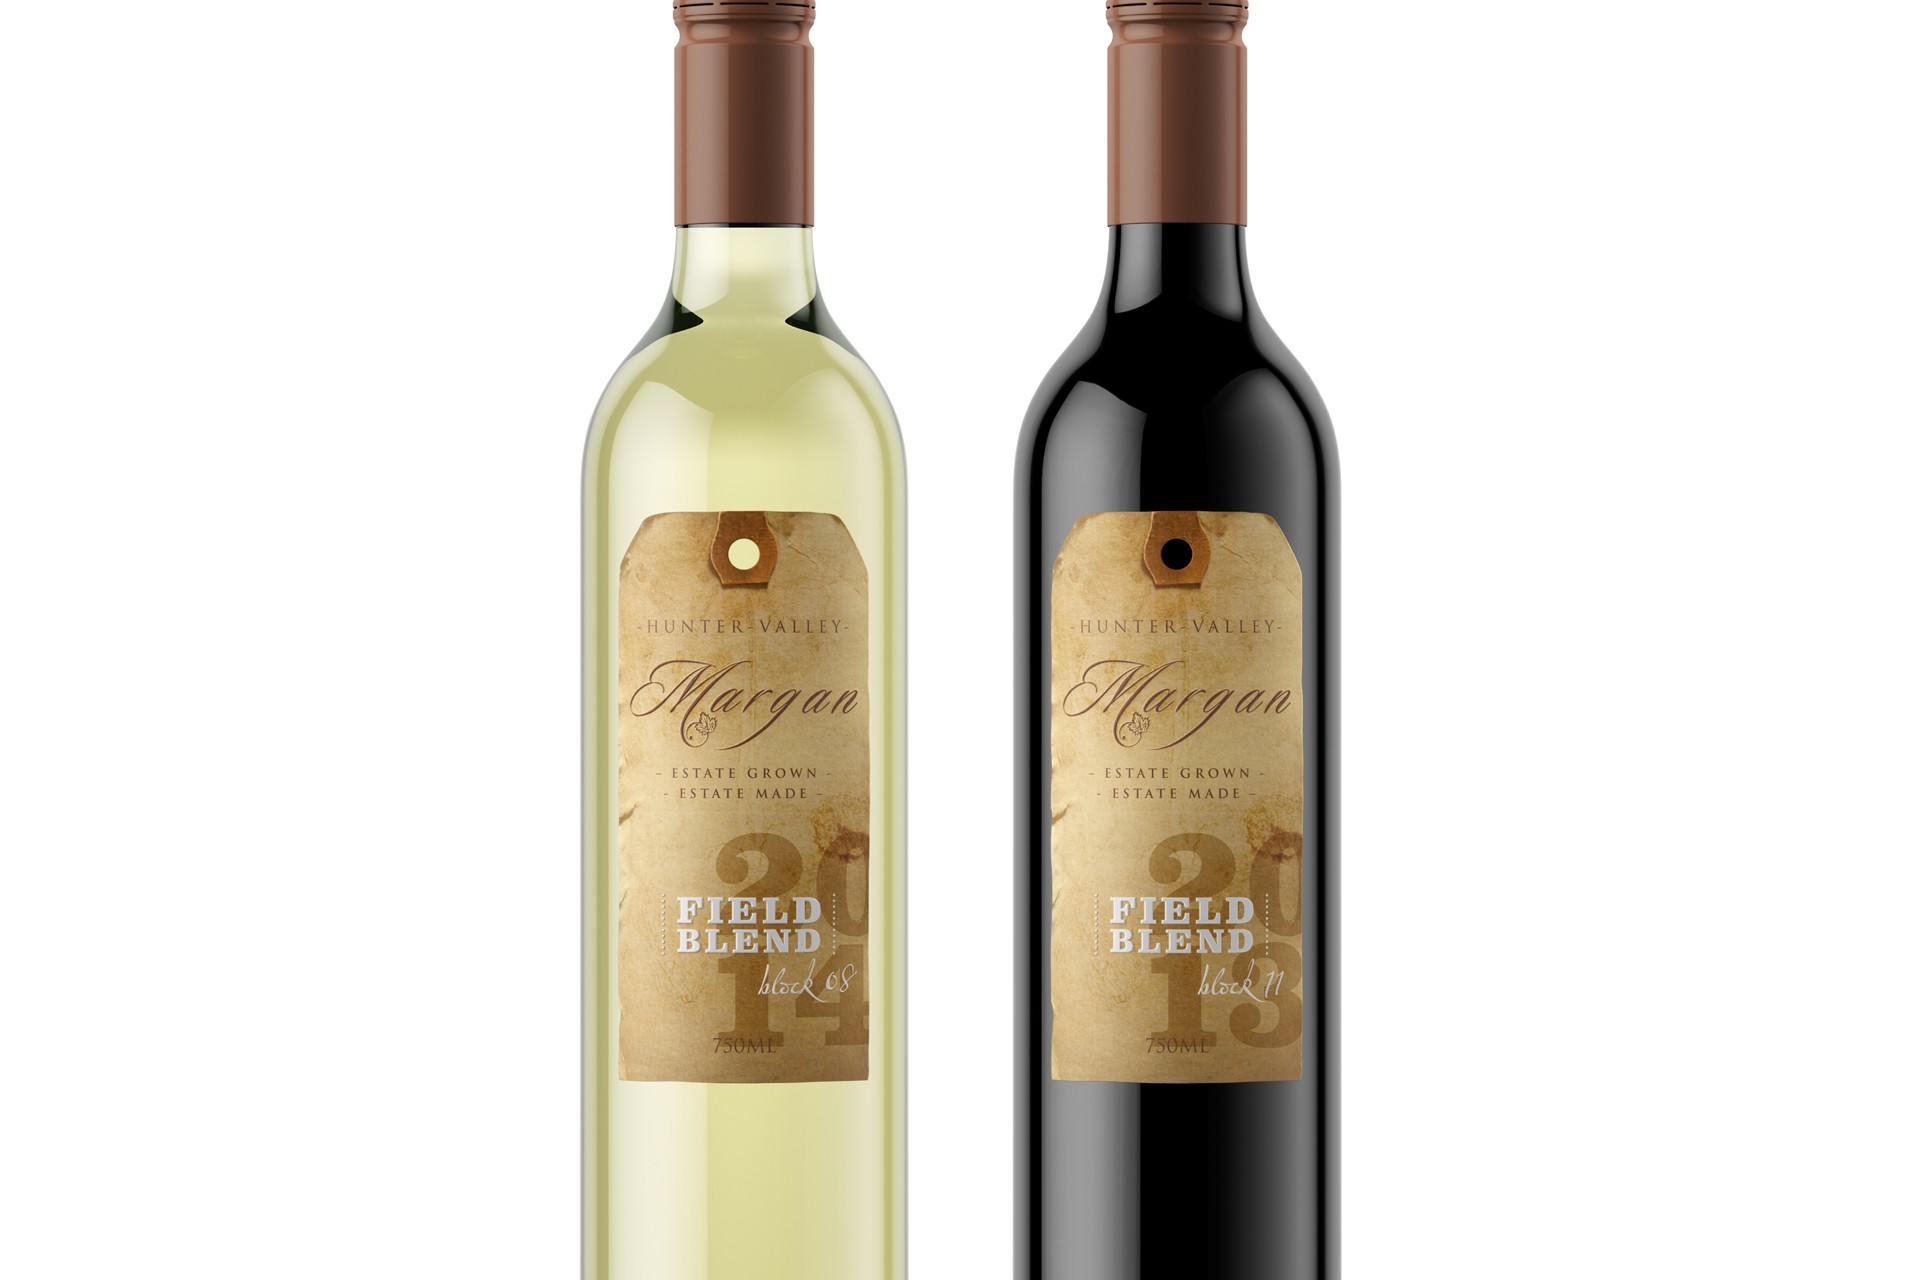 Margan wine packaging design